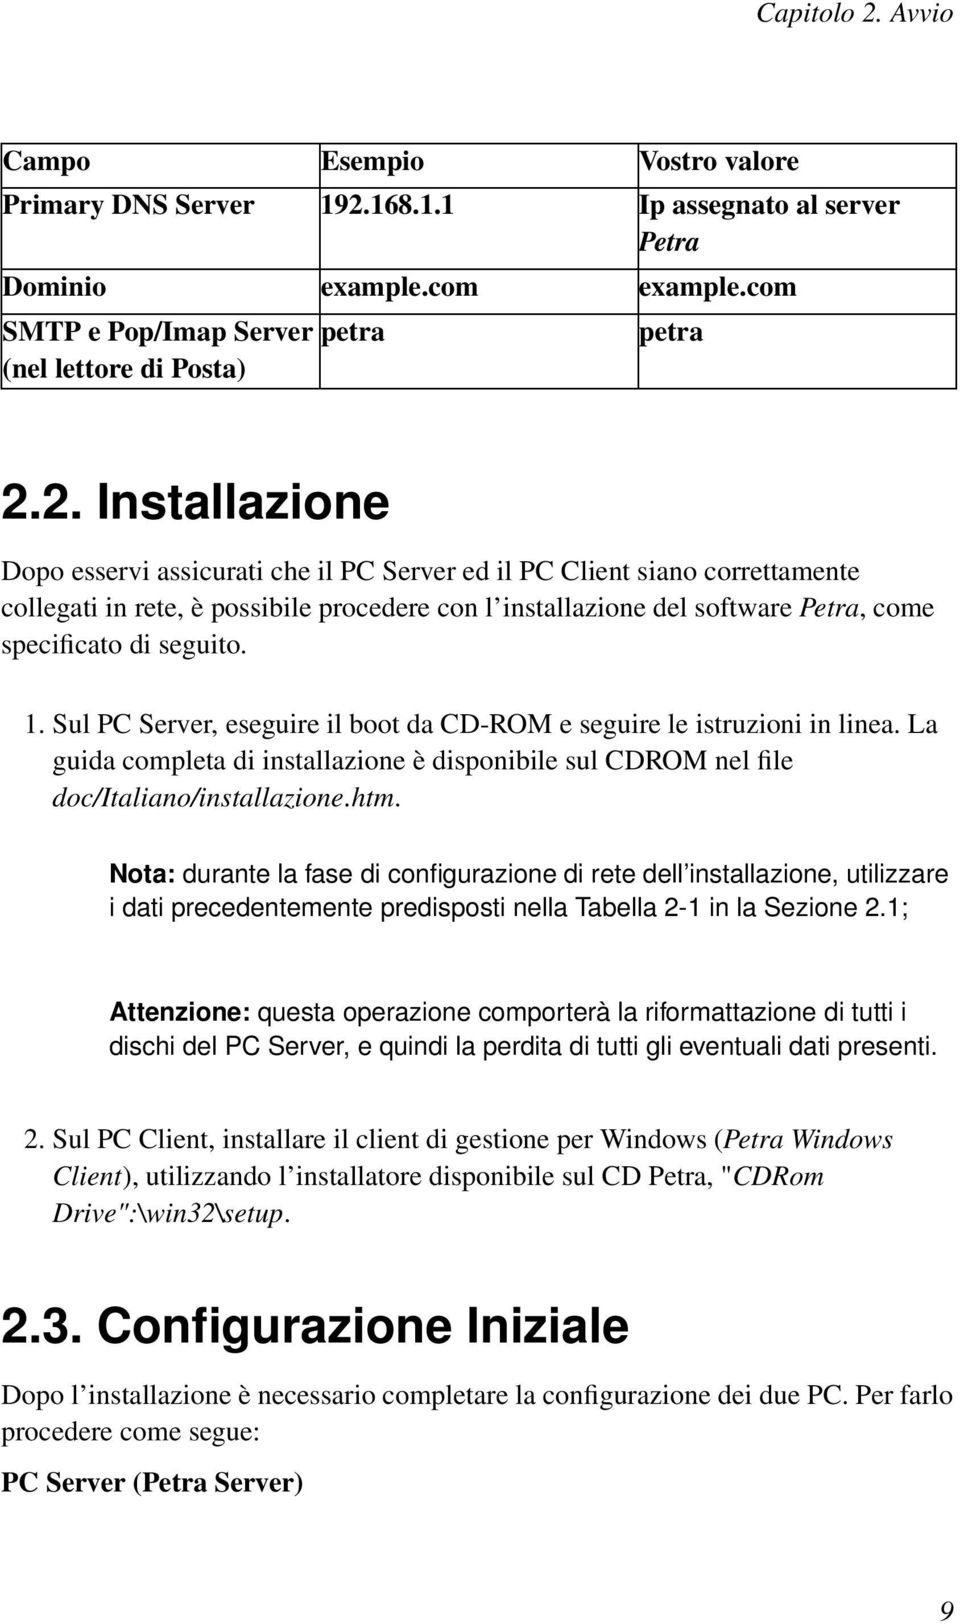 168.1.1 Ip assegnato al server Petra Dominio example.com example.com SMTP e Pop/Imap Server (nel lettore di Posta) petra petra 2.